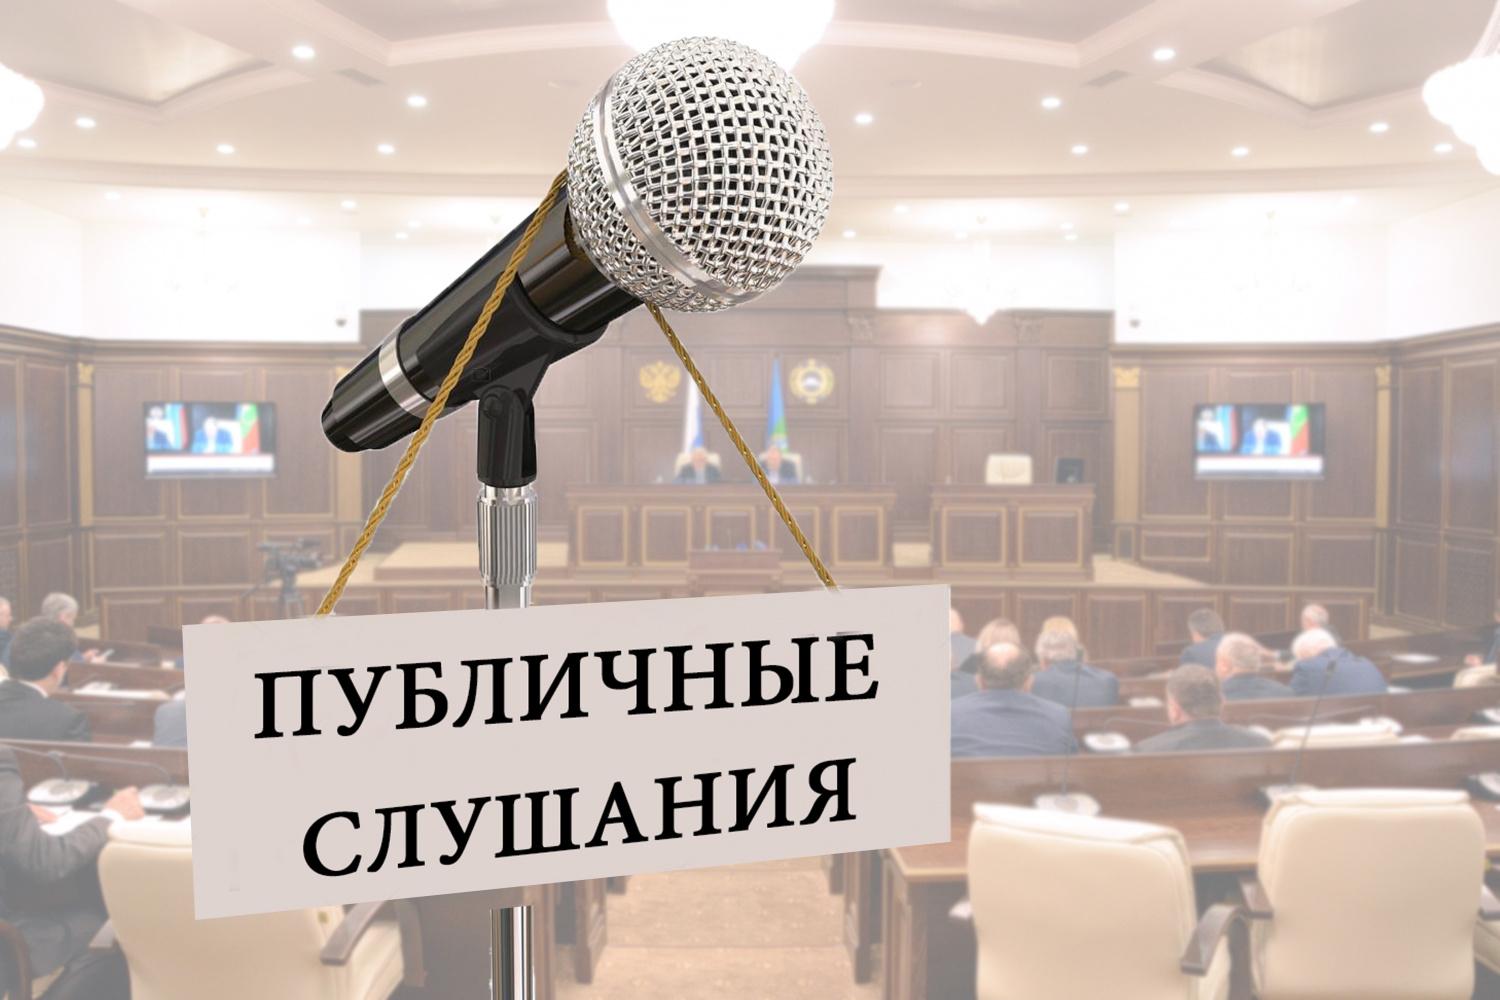 9 декабря состоятся публичные слушания по проекту бюджета Кирово-Чепецкого района на 2023 год.